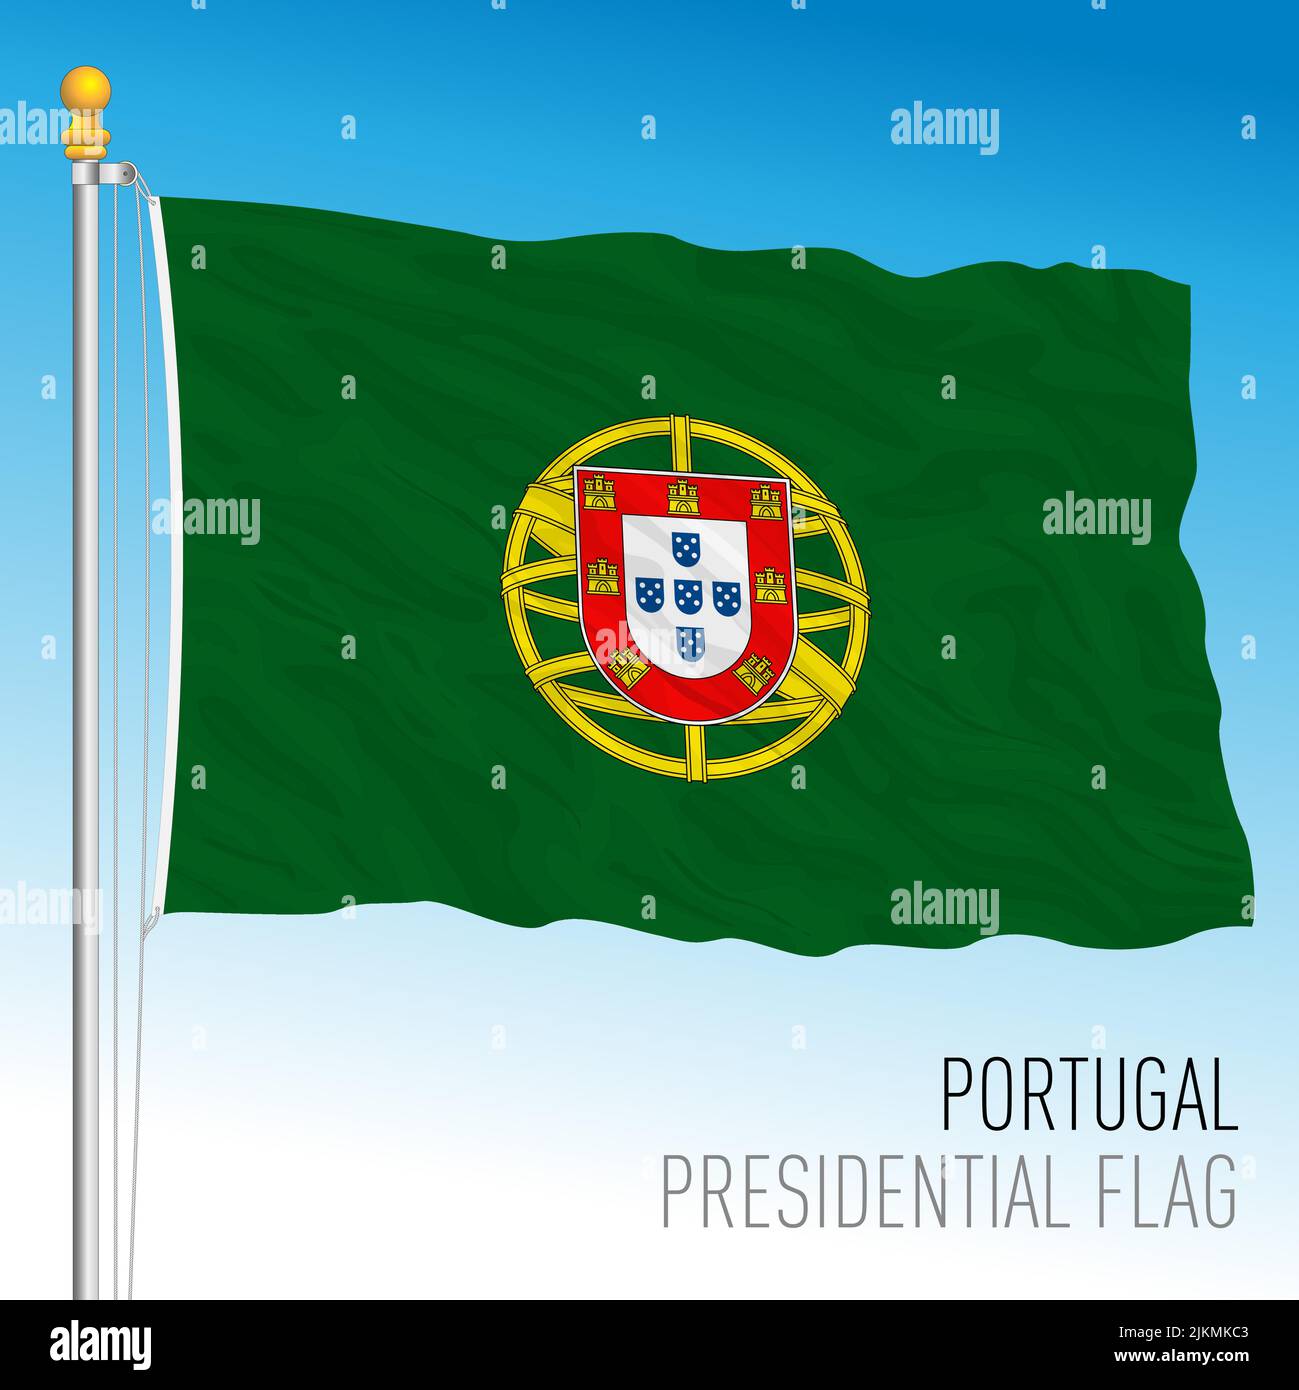 Portugal, bandera presidencial, Unión Europea, ilustración de vectores Ilustración del Vector